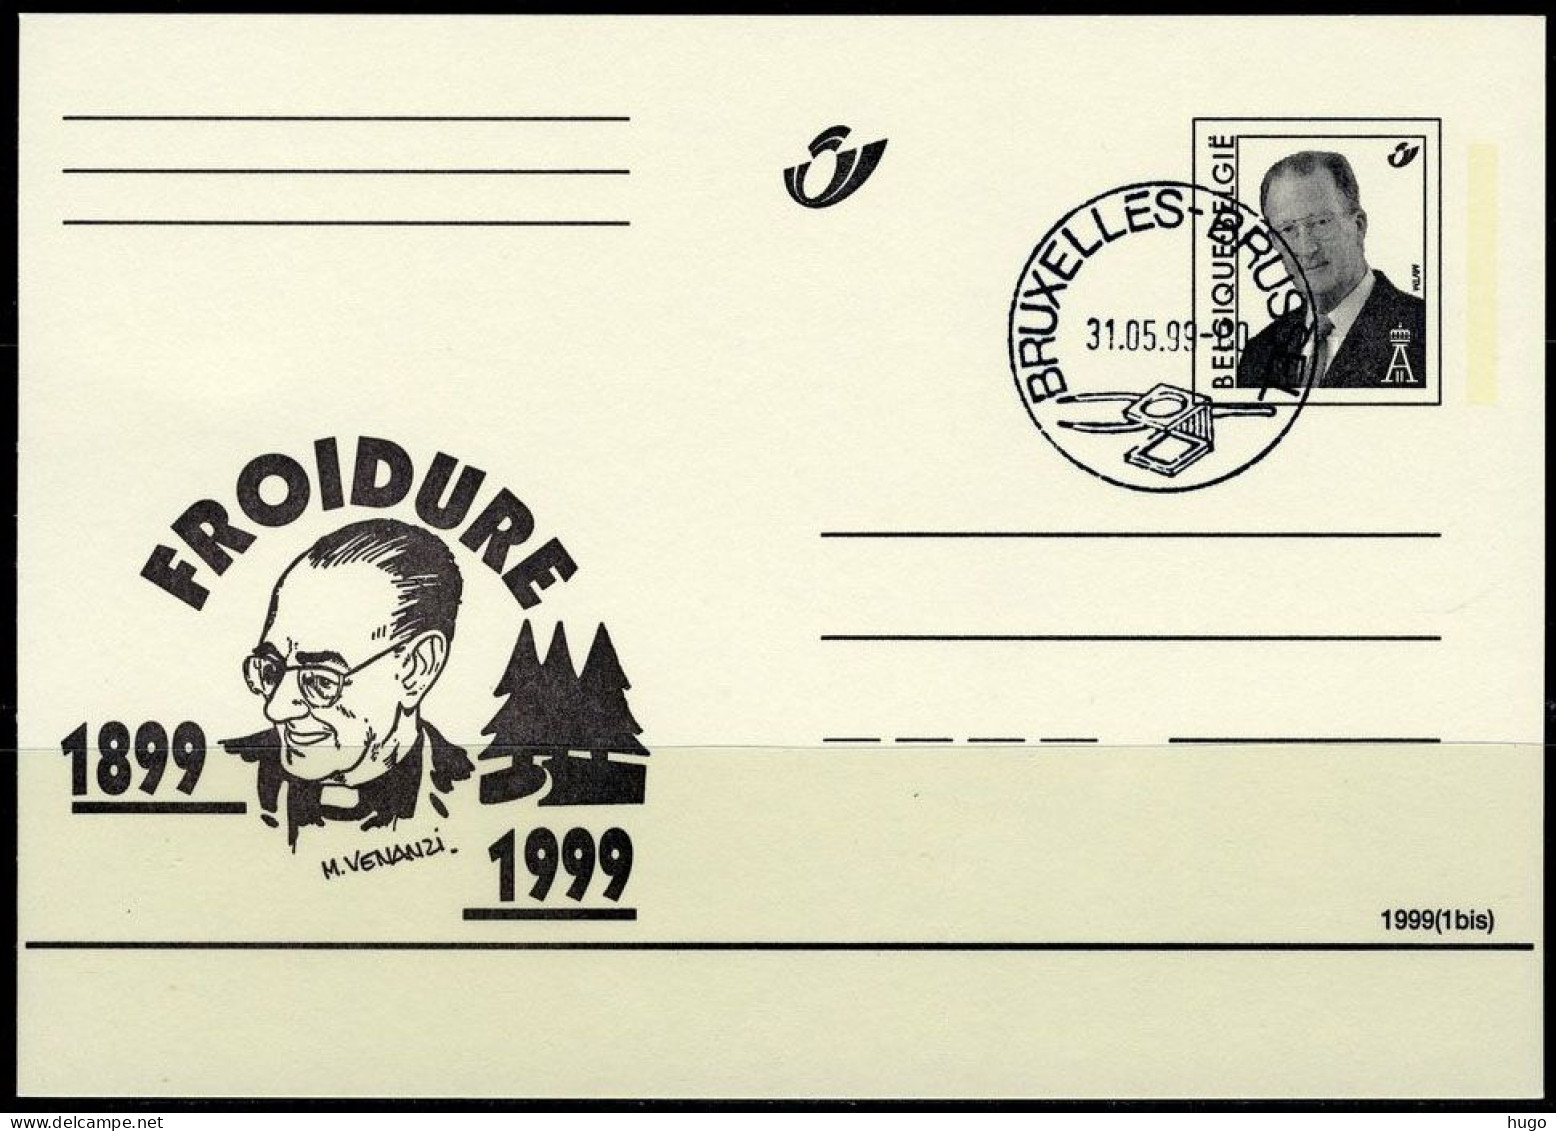 (B) België Briefkaart FDC  1999(1bis) - FROIDURE 1899-199 - Illustrierte Postkarten (1971-2014) [BK]